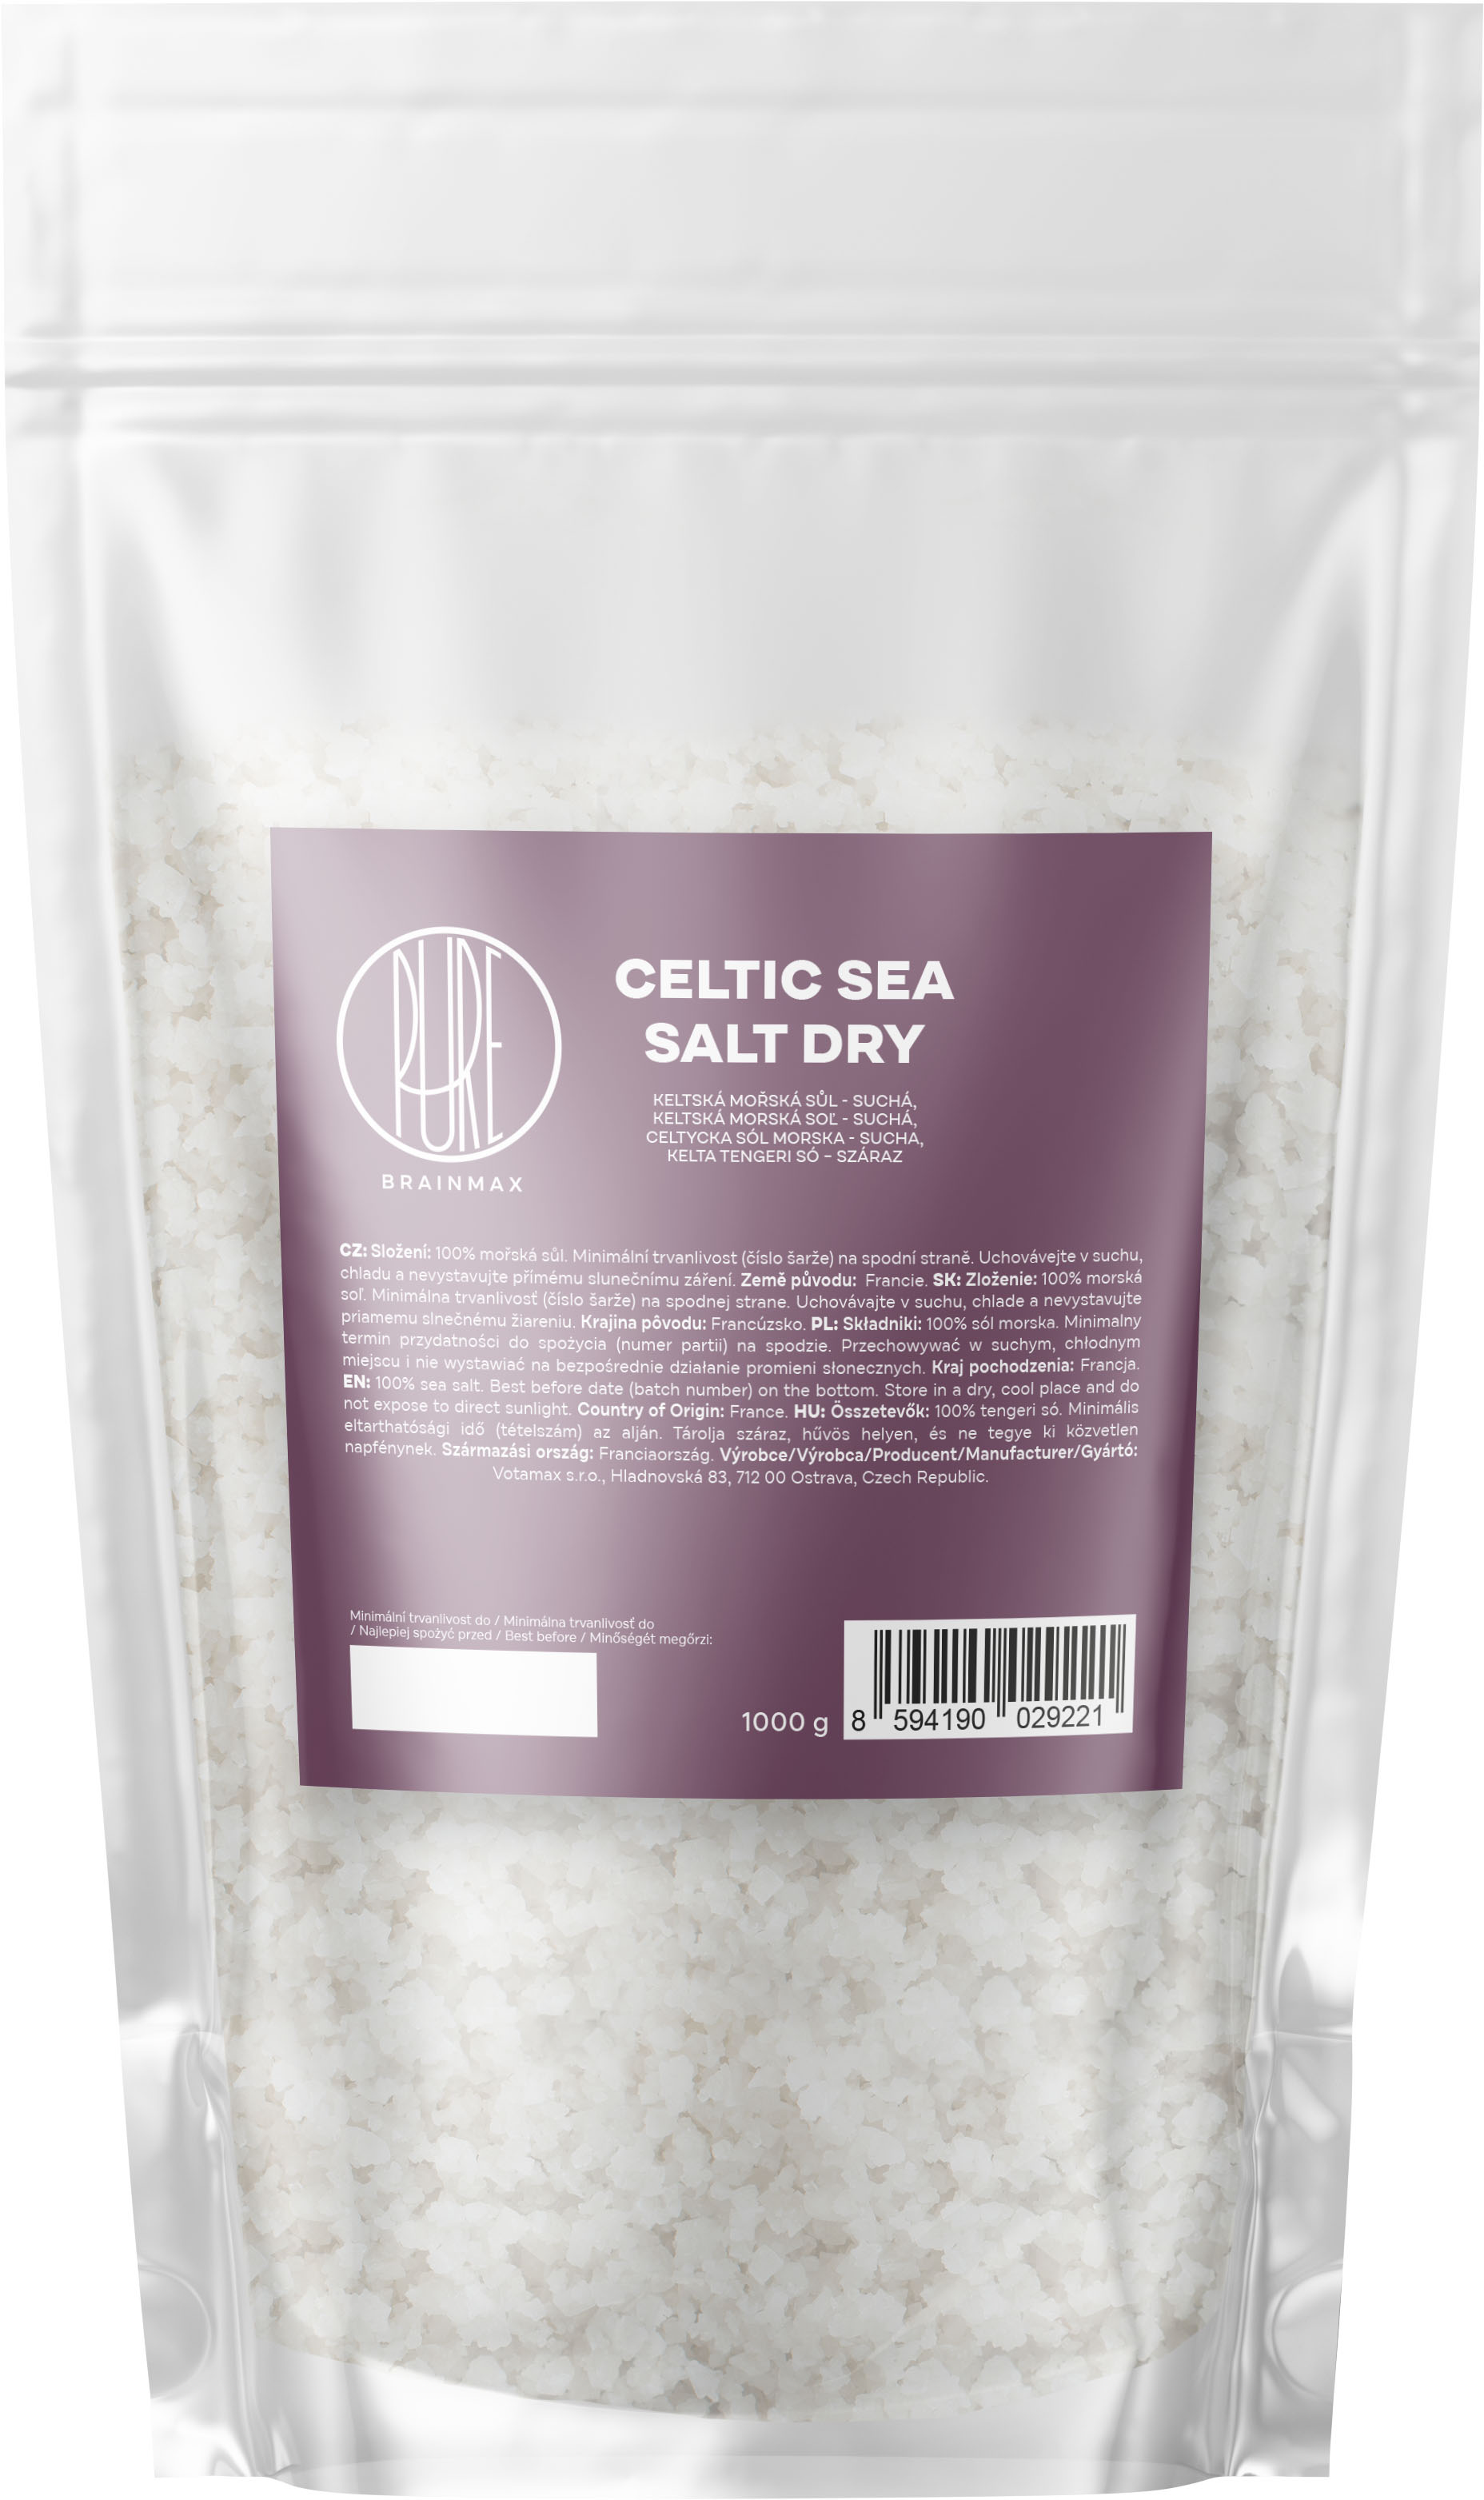 BrainMax Pure Keltská mořská sůl, suchá Hmotnost: 500 g Keltská mořská sůl